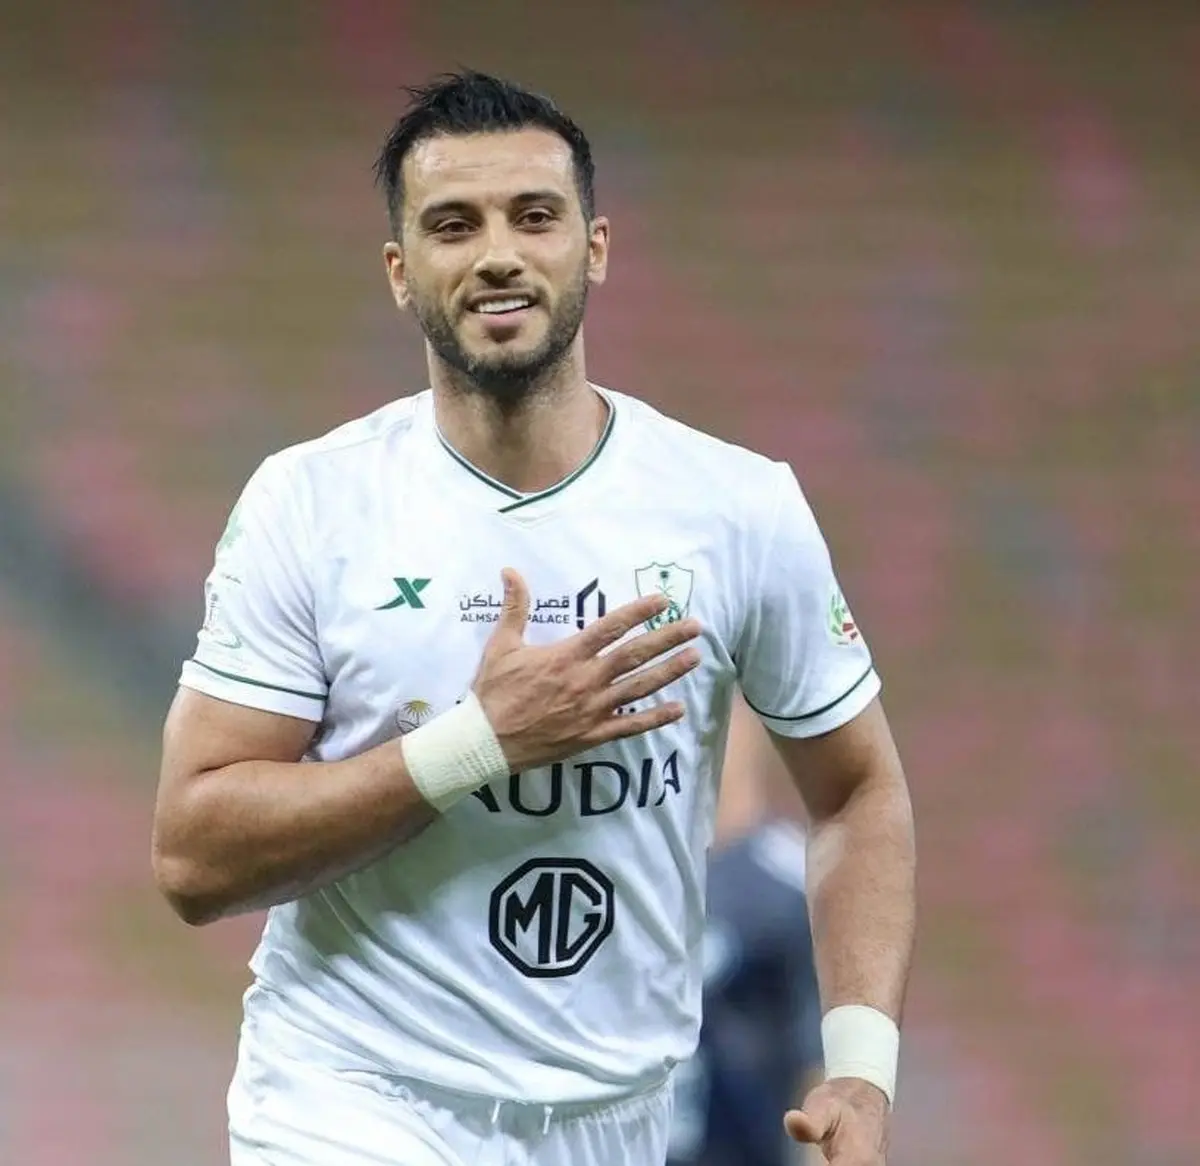 رکورد عجیب عمر السومه در بازی با تیمهای ایرانی